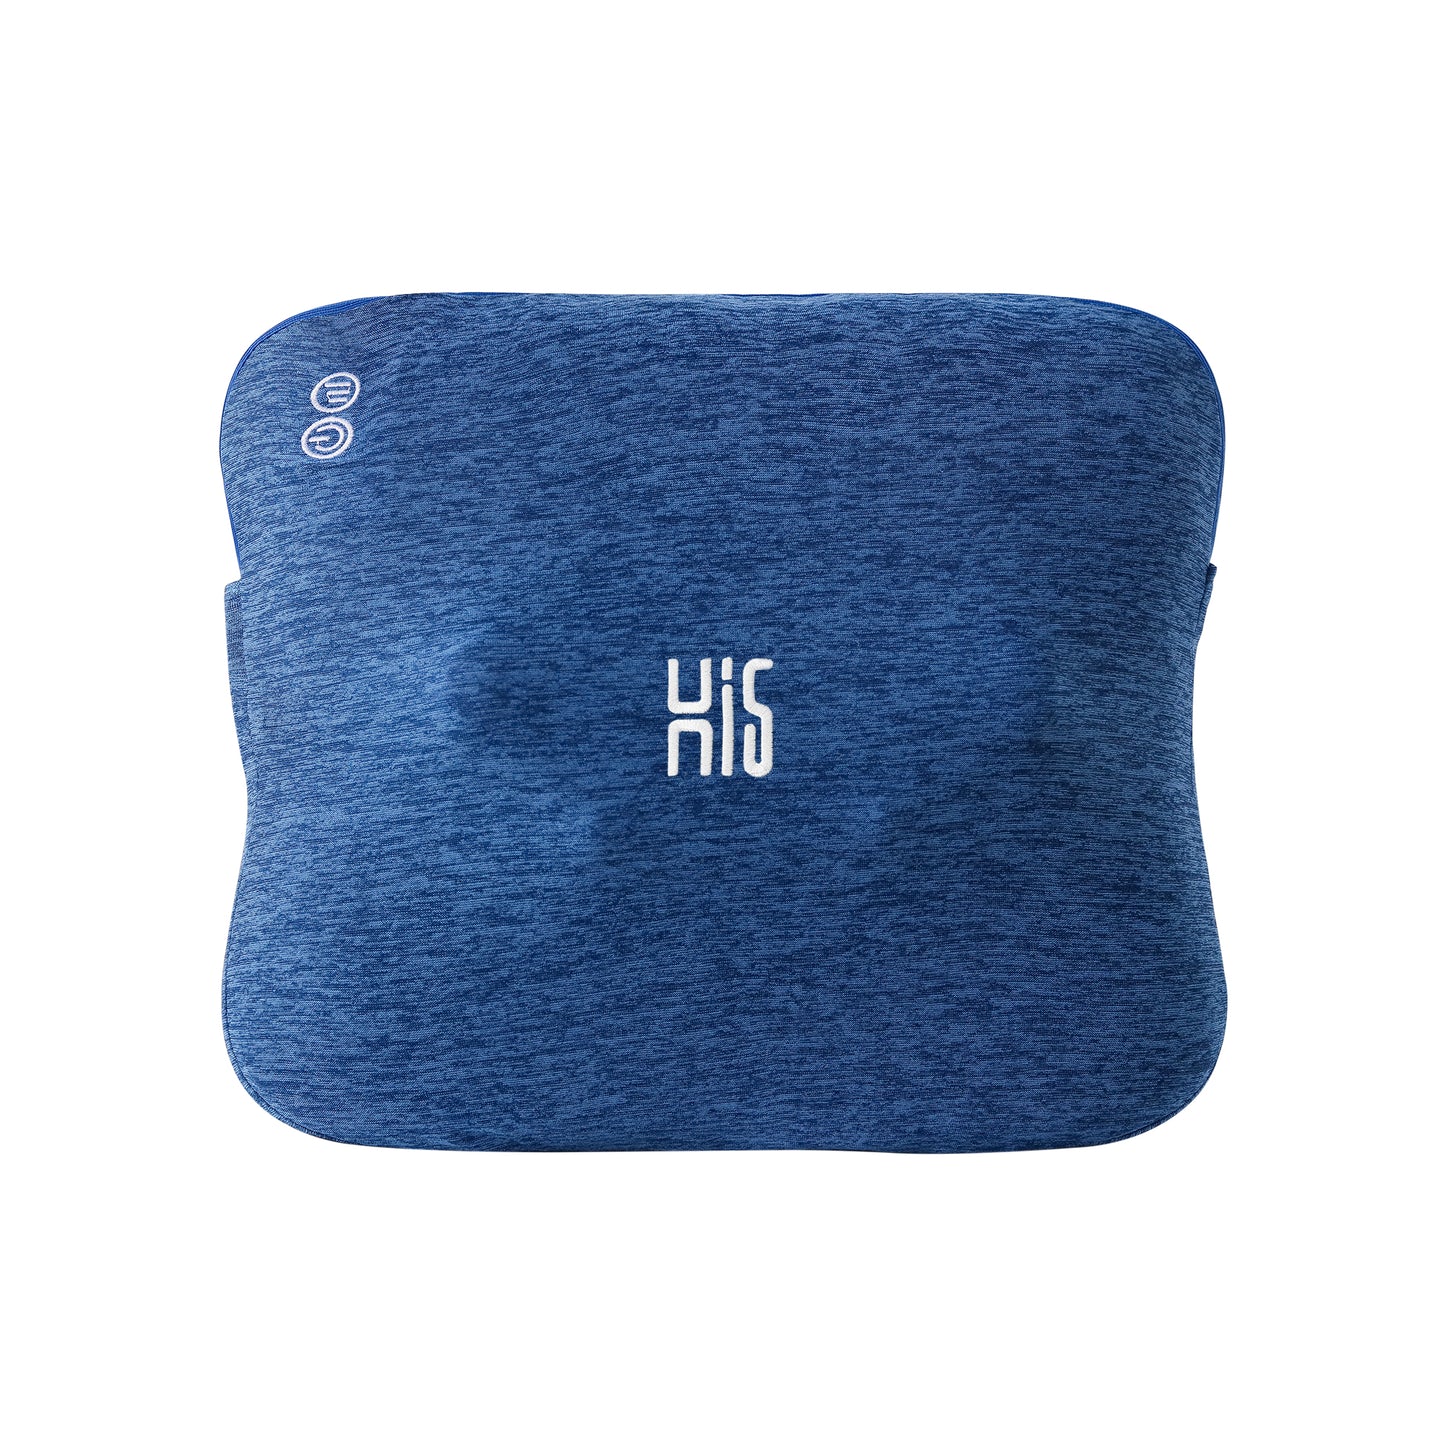 Hi5 Bravo Shiatsu Coussin de massage avec fonction chauffante, 4 têtes de massage, arrêt automatique, housse lavable pour les épaules, le cou, le dos et les jambes